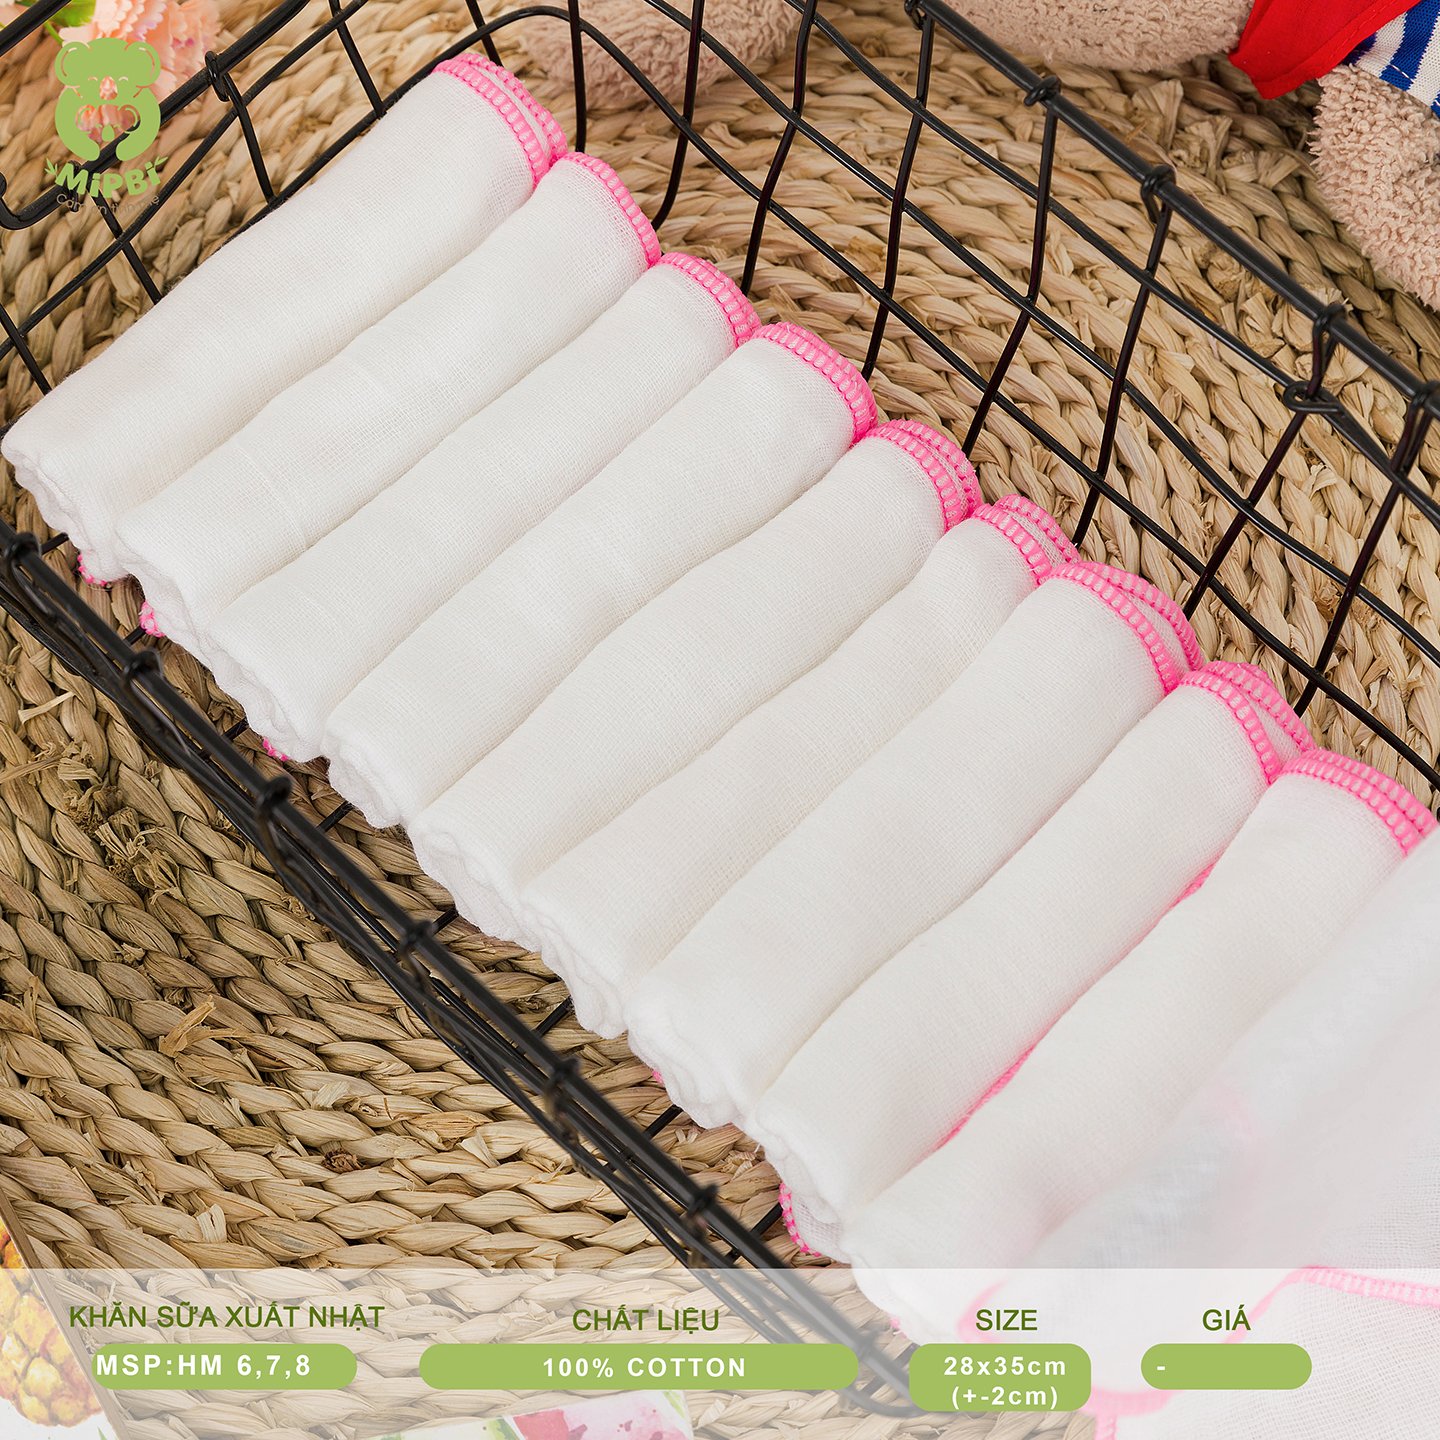 Combo 2 gói khăn xô sữa xuất nhật Mipbi 4 lớp màu hồng